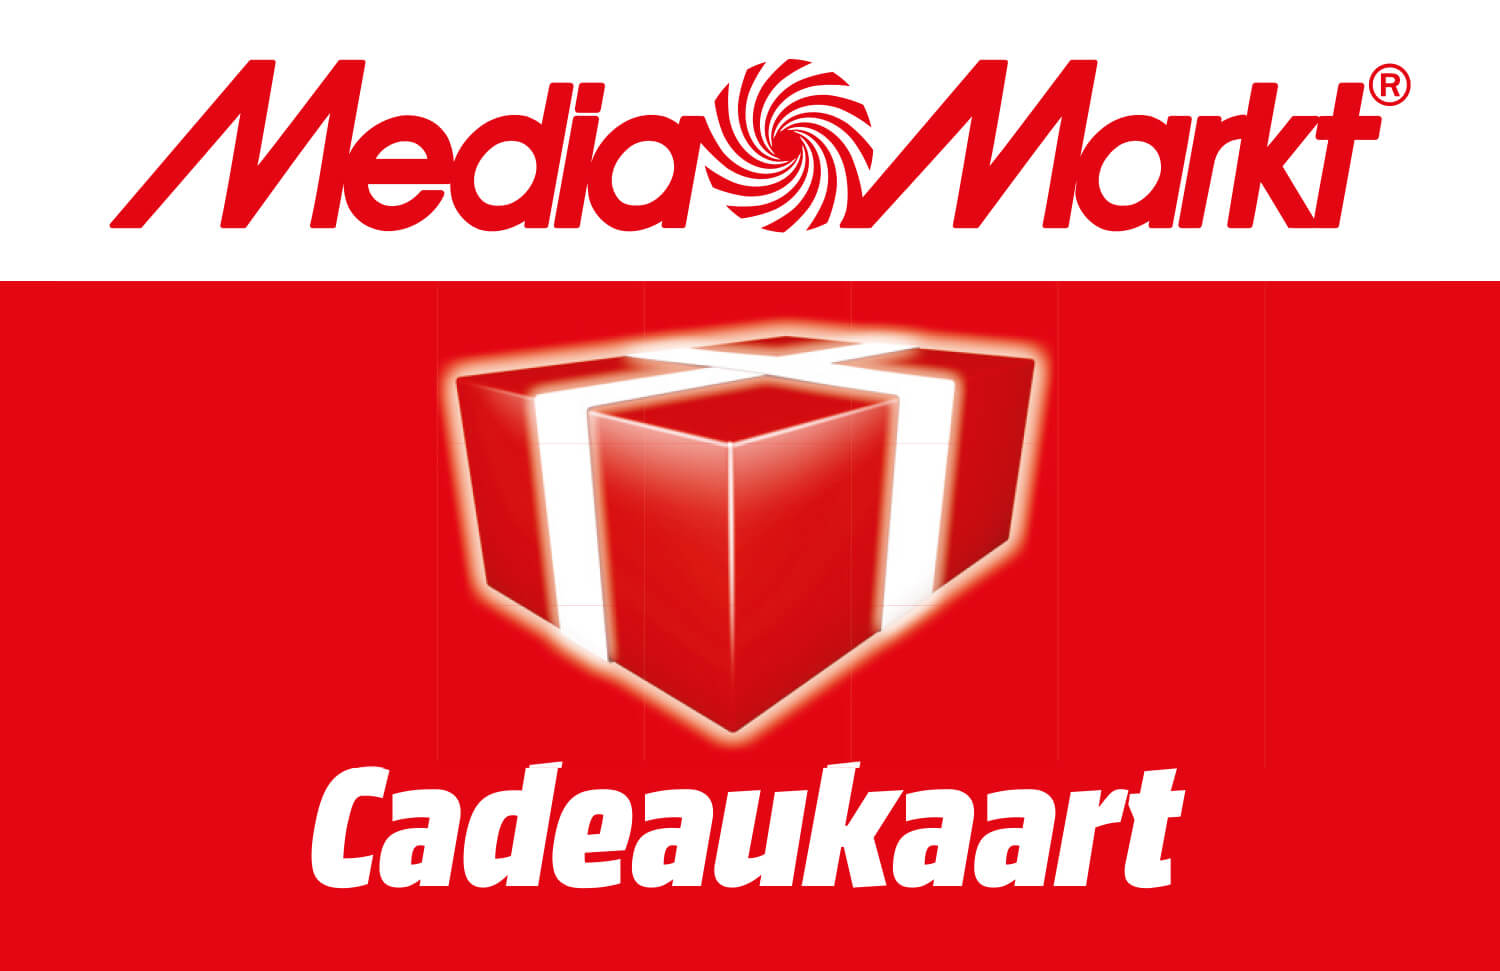 Ik geloof Pluche pop Klant MediaMarkt Cadeaukaart | Cadeaukaart.nl